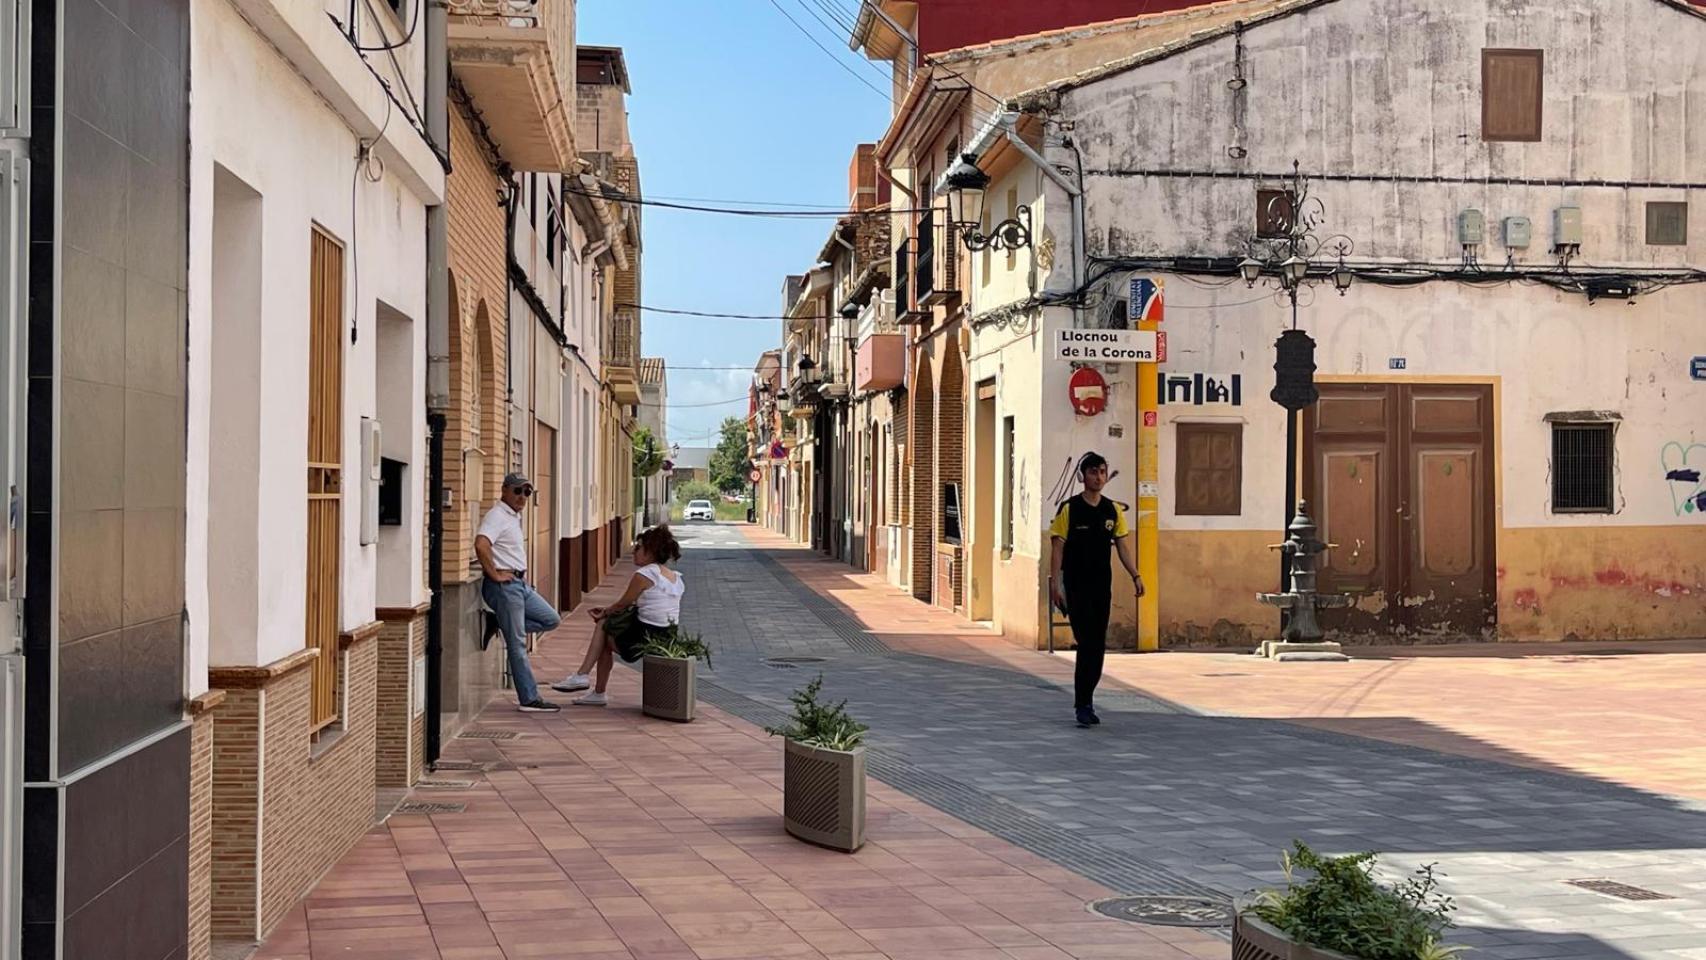 Calle de acceso al municipio valenciano de Llocnou de la Corona.